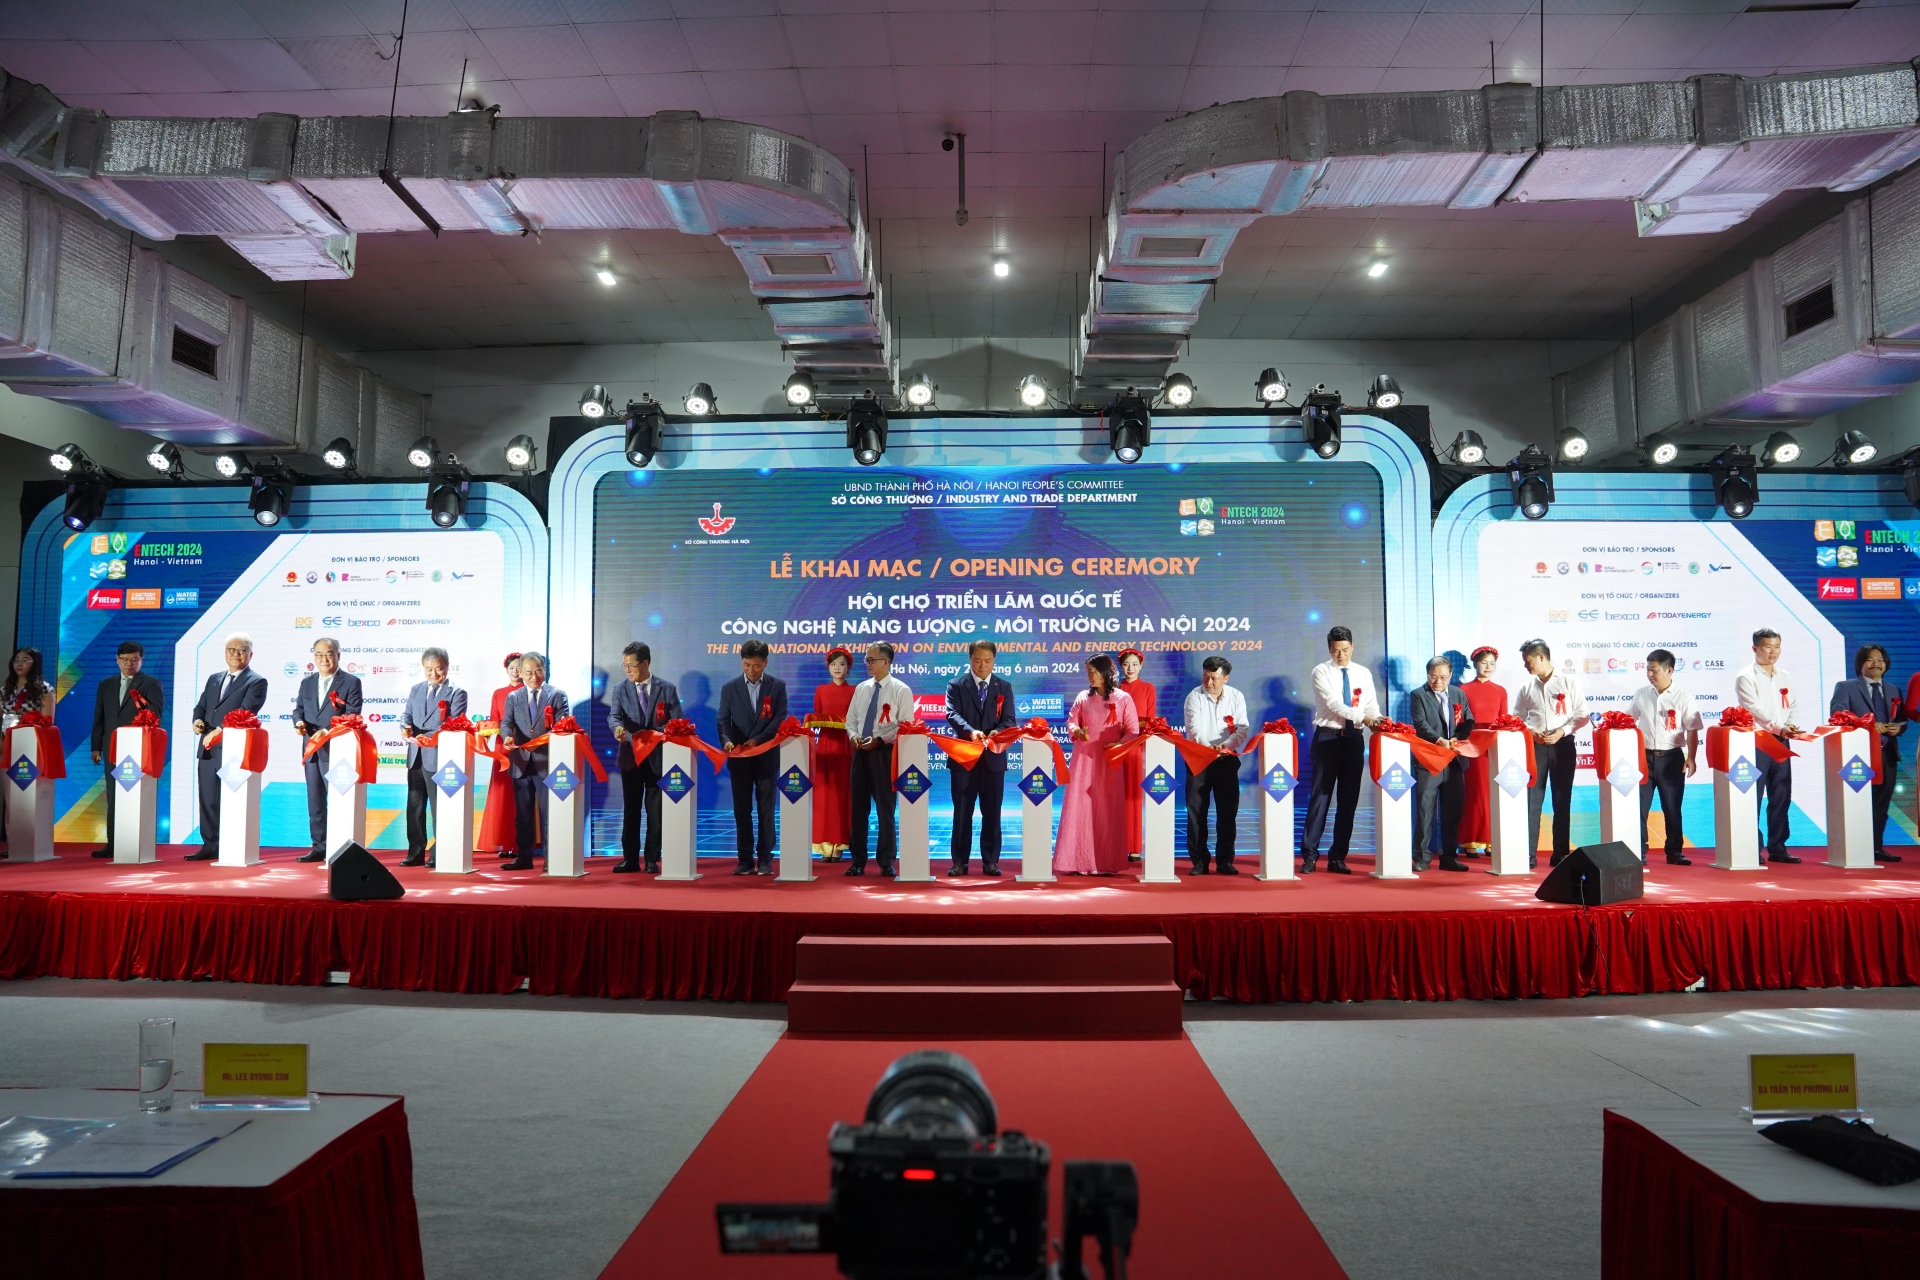 Khai mạc Hội chợ triển lãm quốc tế công nghệ năng lượng - môi trường Hà Nội 2024